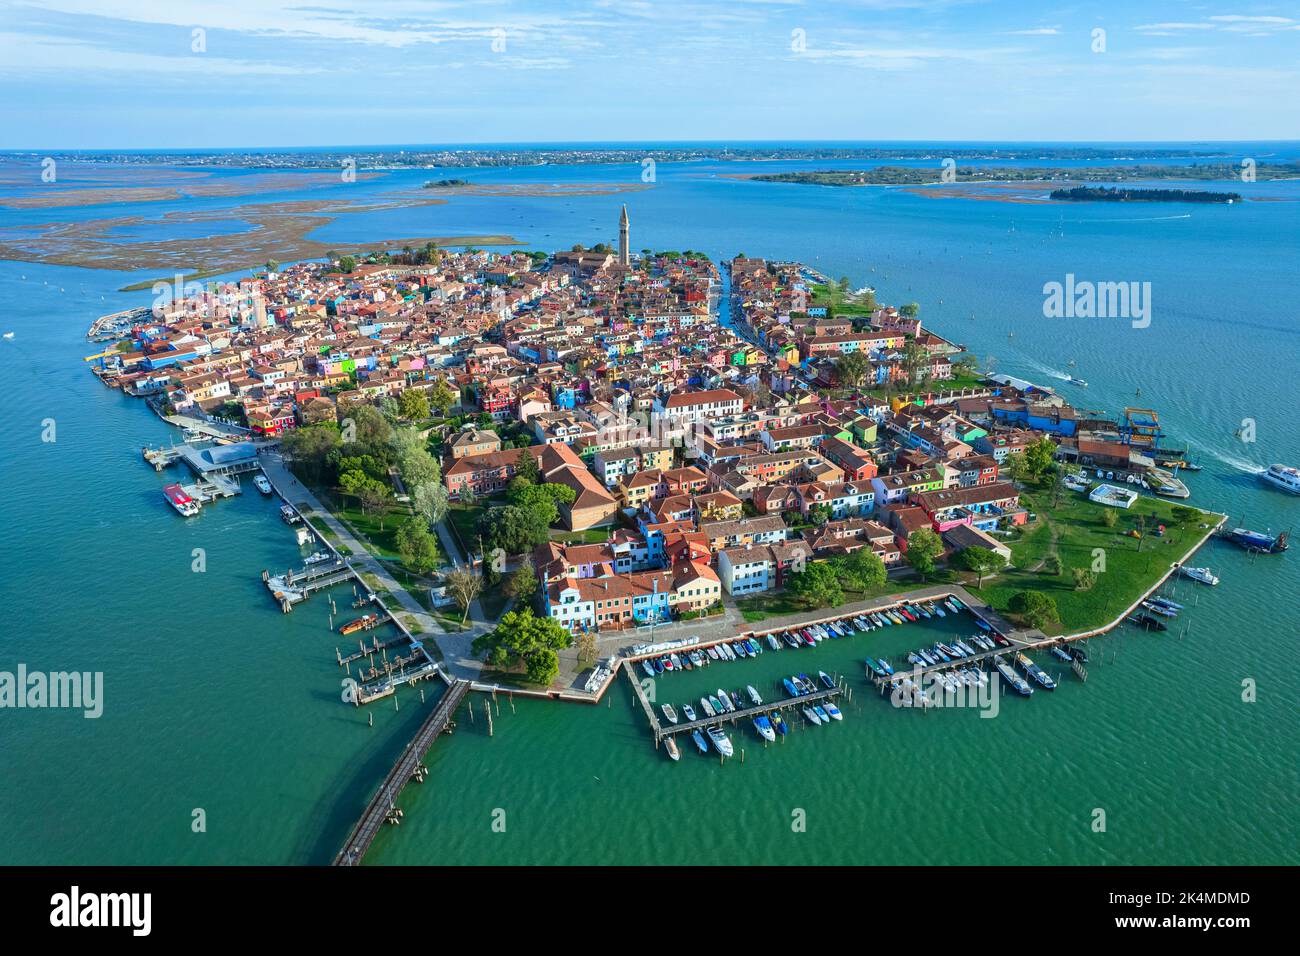 Luftaufnahme der Insel Burano. Burano ist eine der Inseln Venedigs, die für ihre bunten Häuser bekannt ist. Burano, Venedig - Oktober 2022 Stockfoto